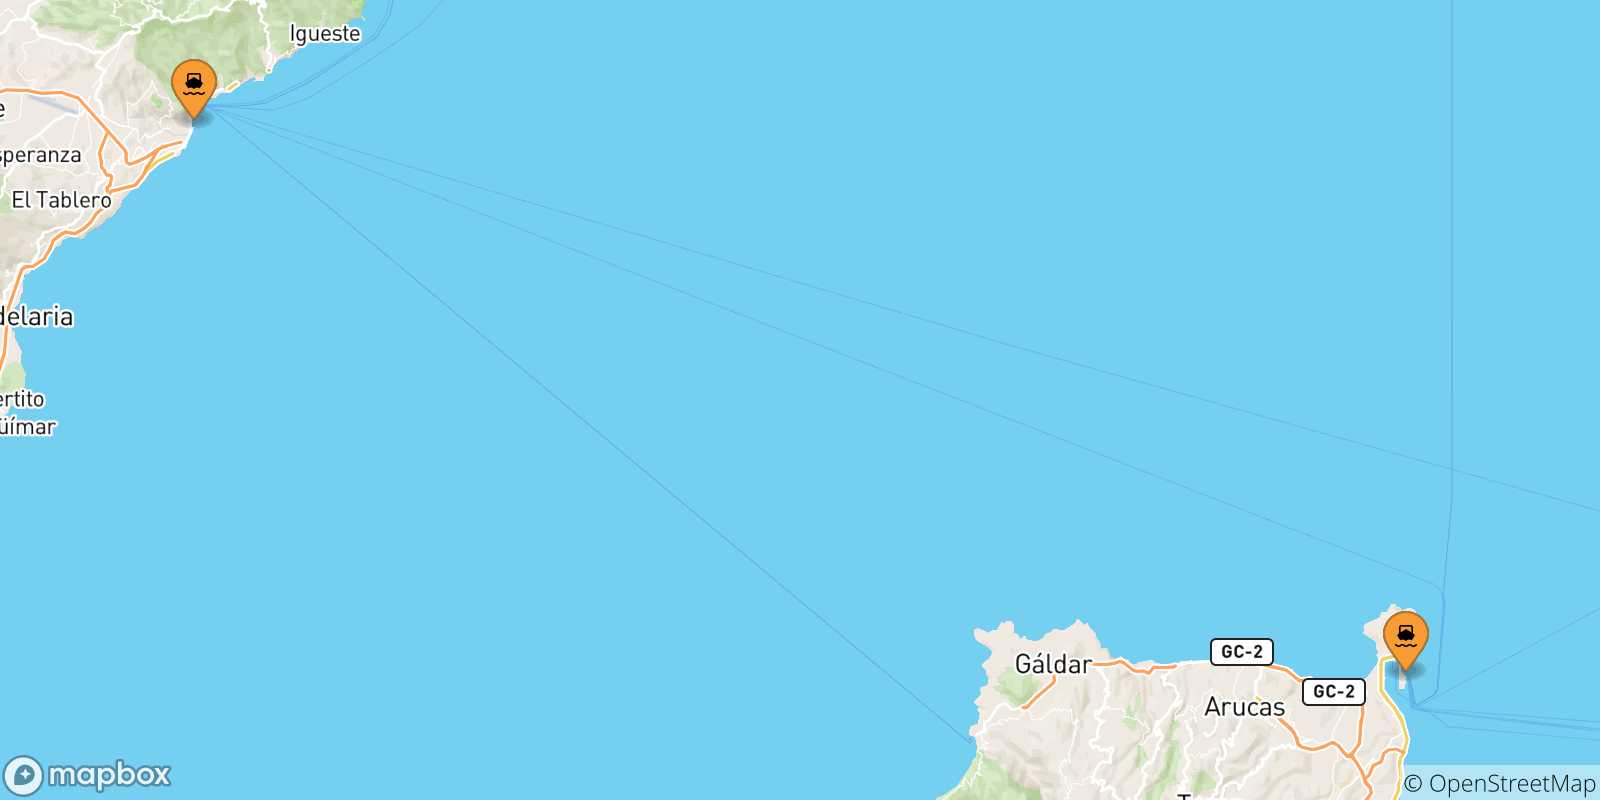 Mappa delle possibili rotte tra le Isole Canarie e Morro Jable (Fuerteventura)